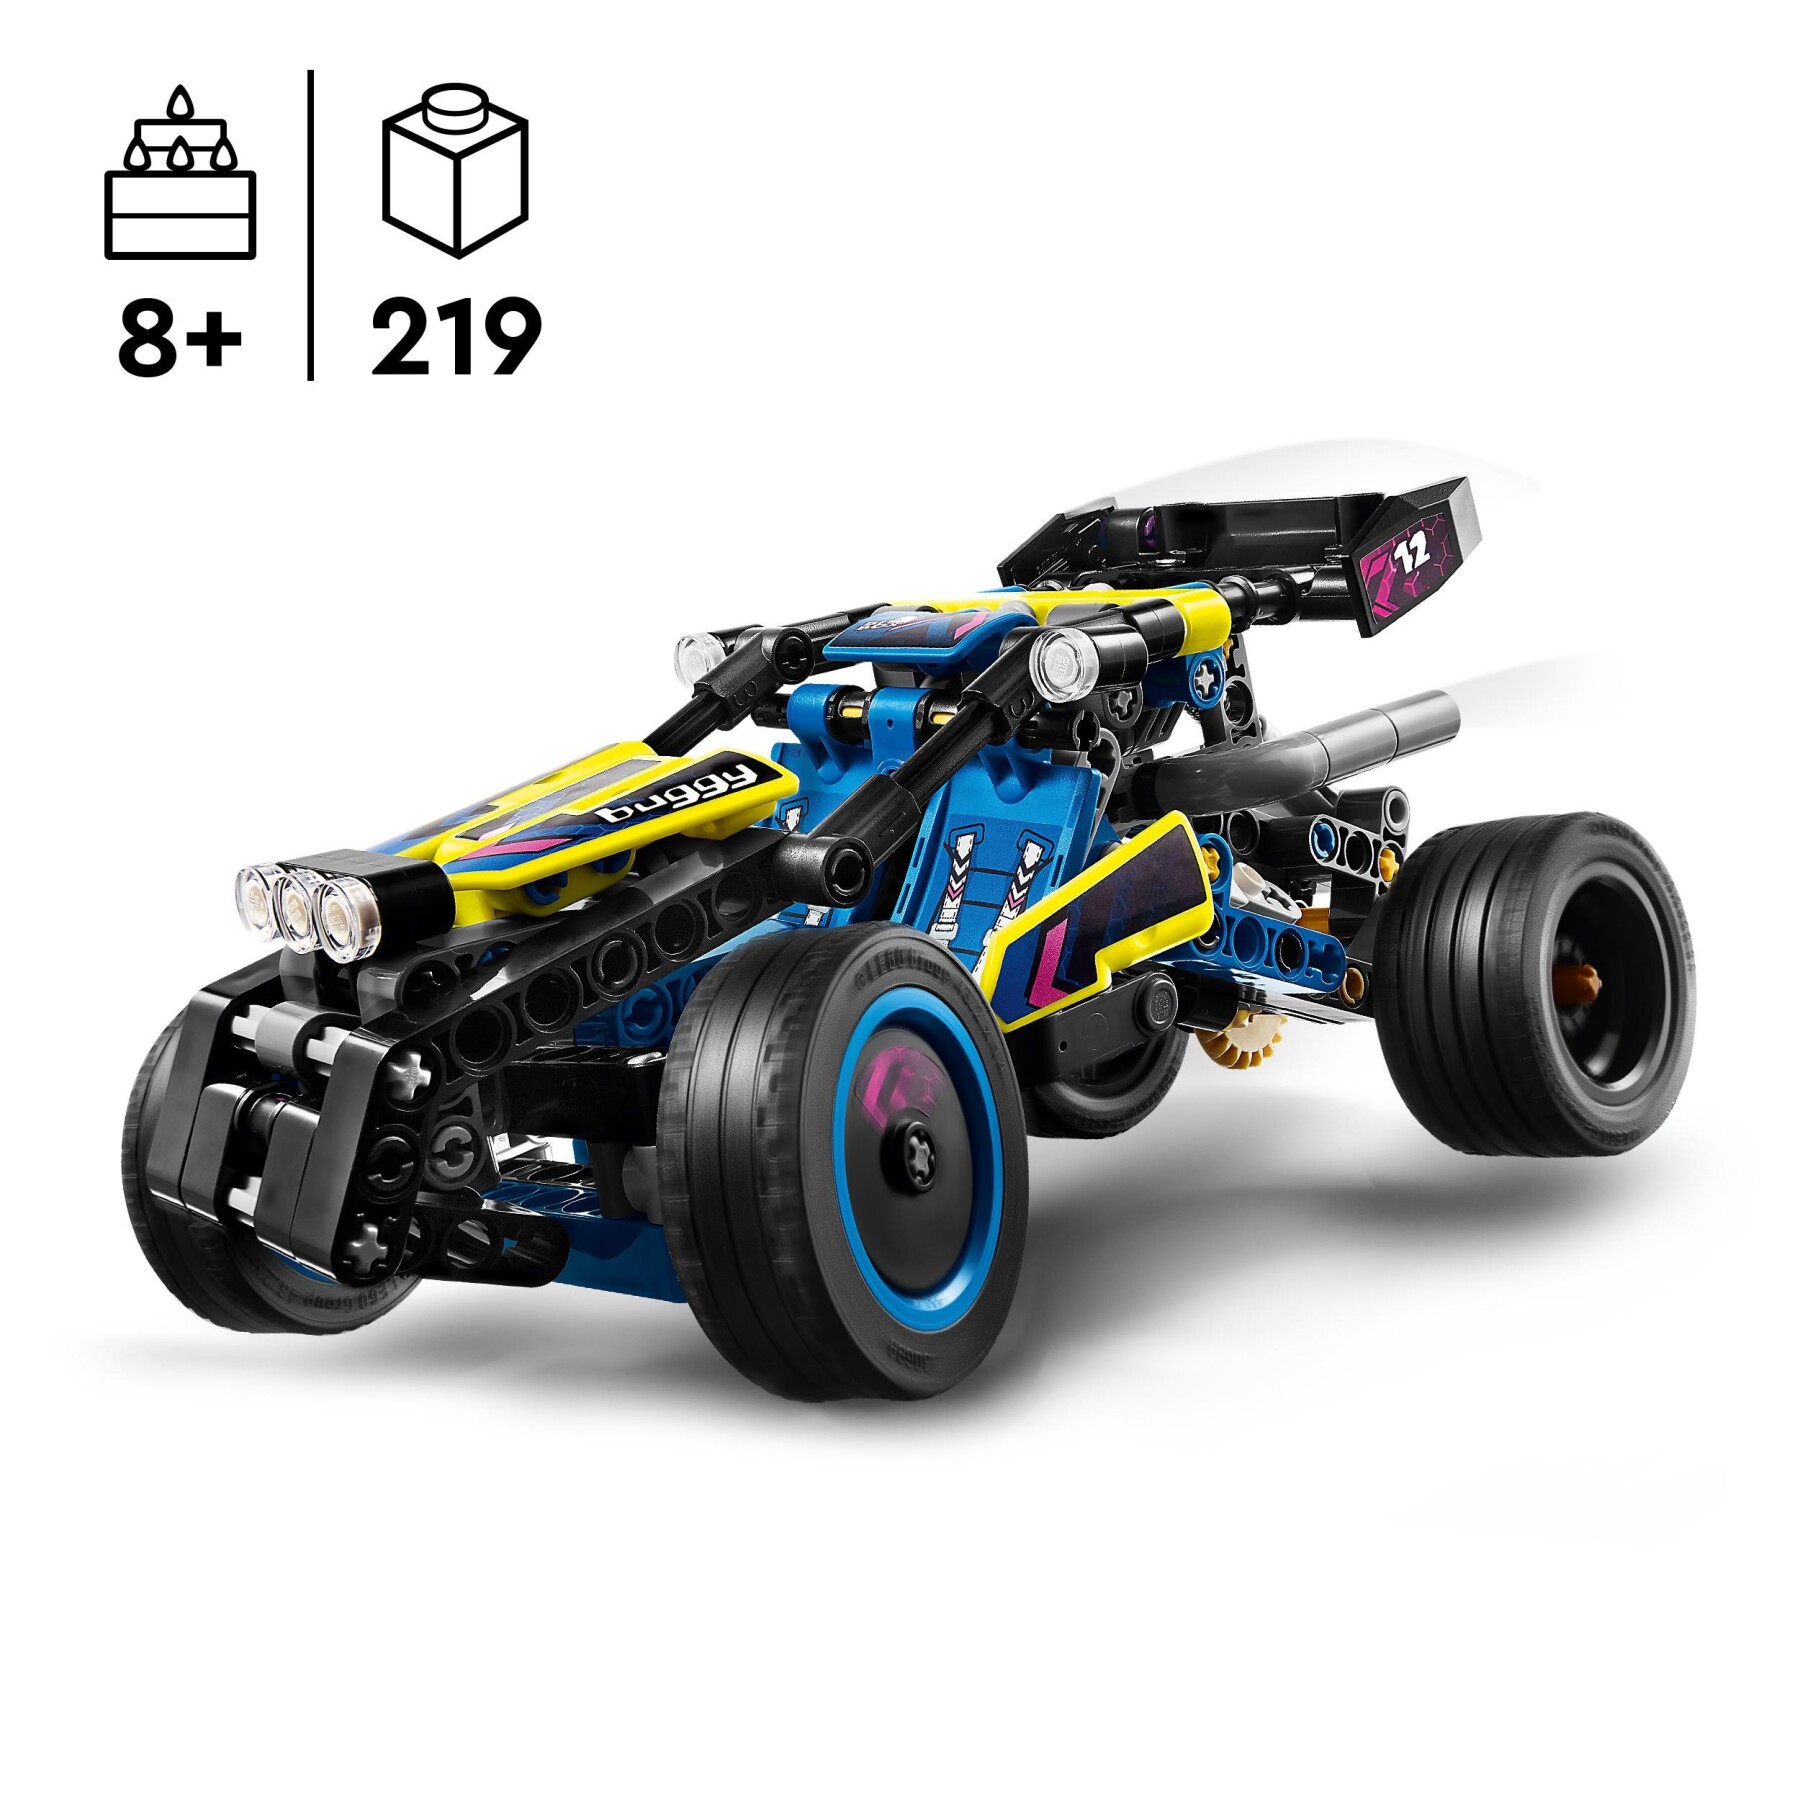 Lego technic 42164 buggy da corsa, macchina giocattolo per bambini da 8 anni in su, regalo amanti modellini di auto da gara - LEGO TECHNIC